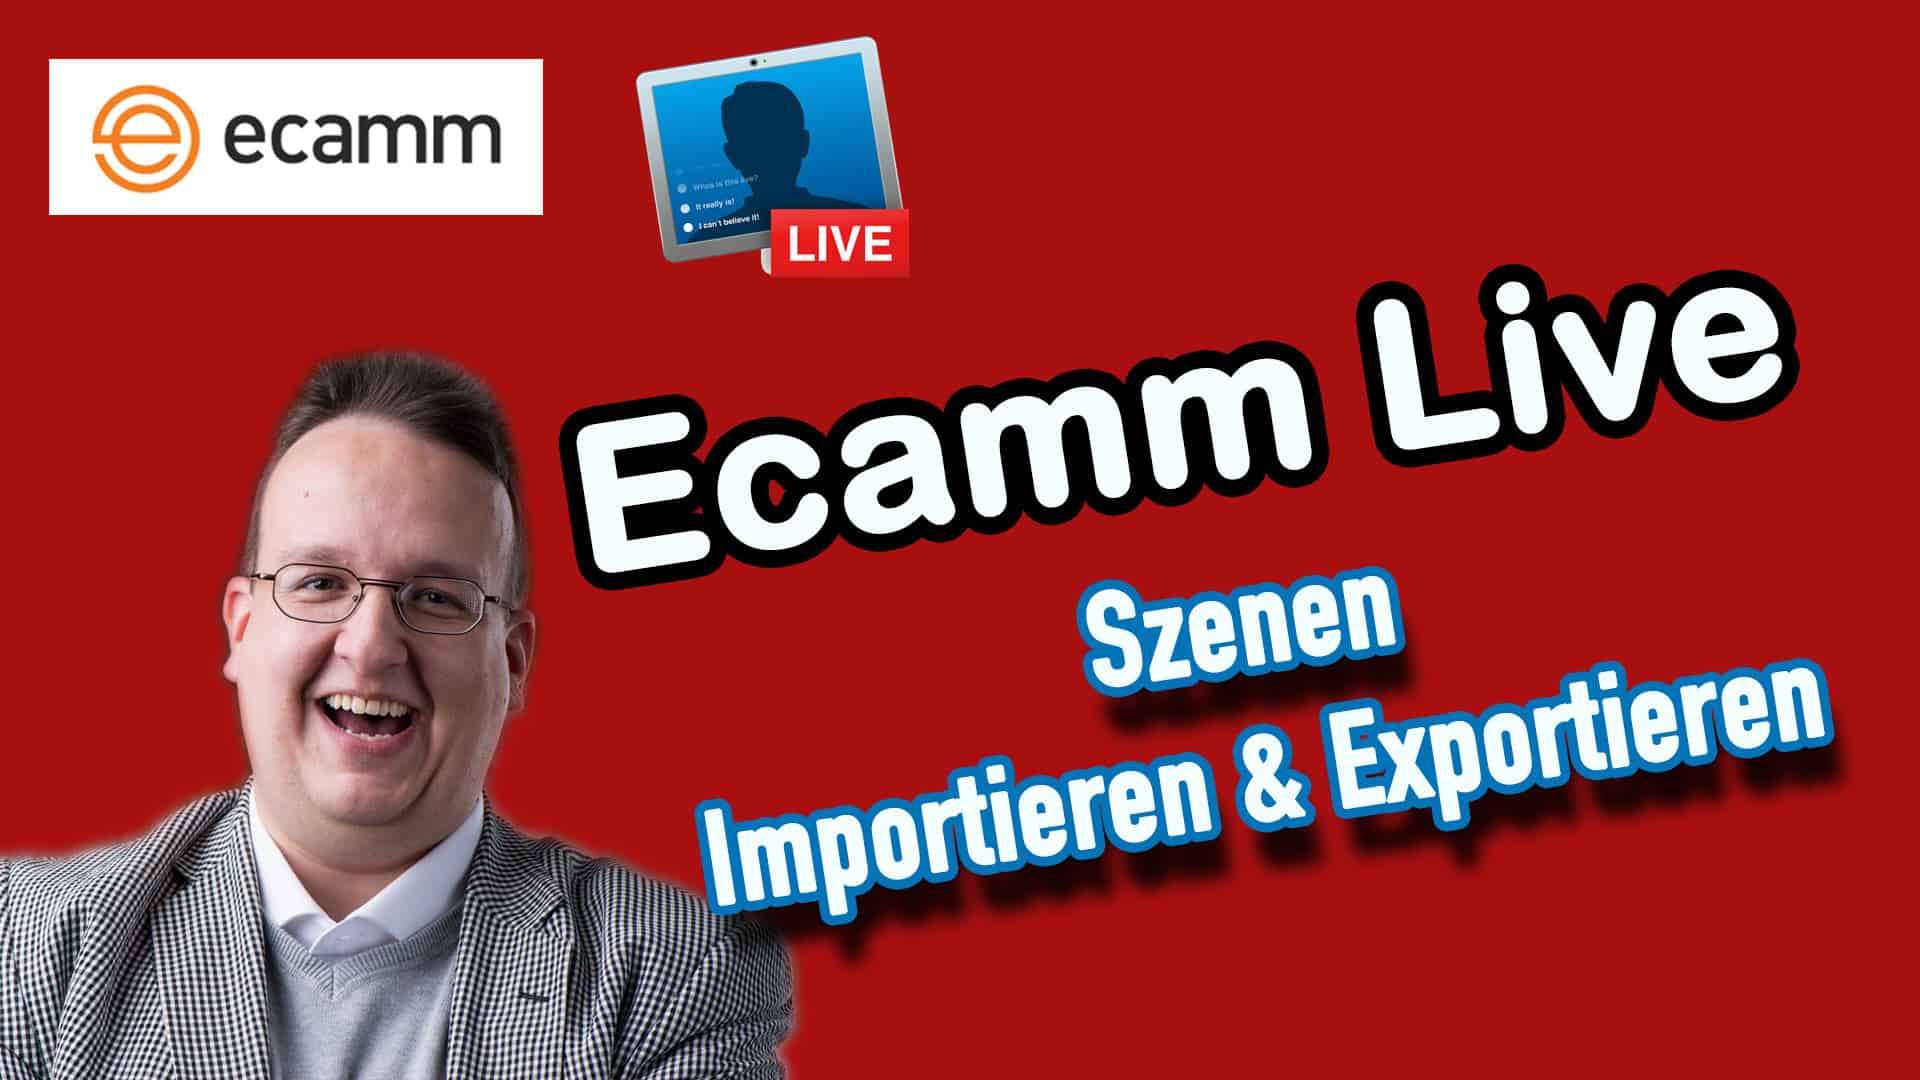 Ecamm Live: Szenen importieren und exportieren